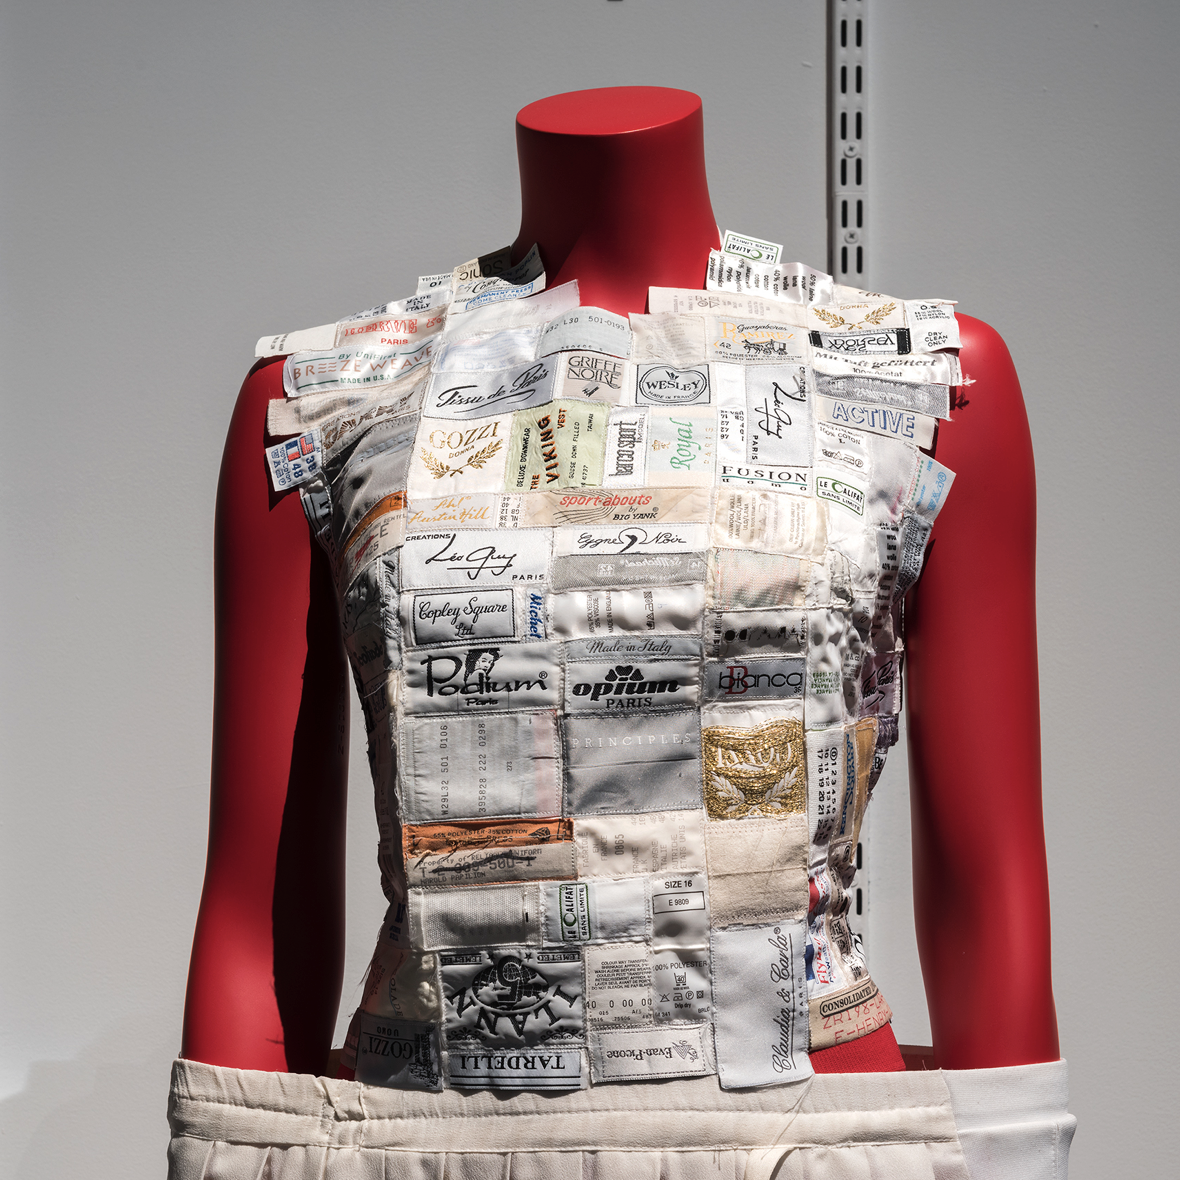 Exhibition Review: Margiela/Galliera 1989-2009 — The Fashion Studies ...